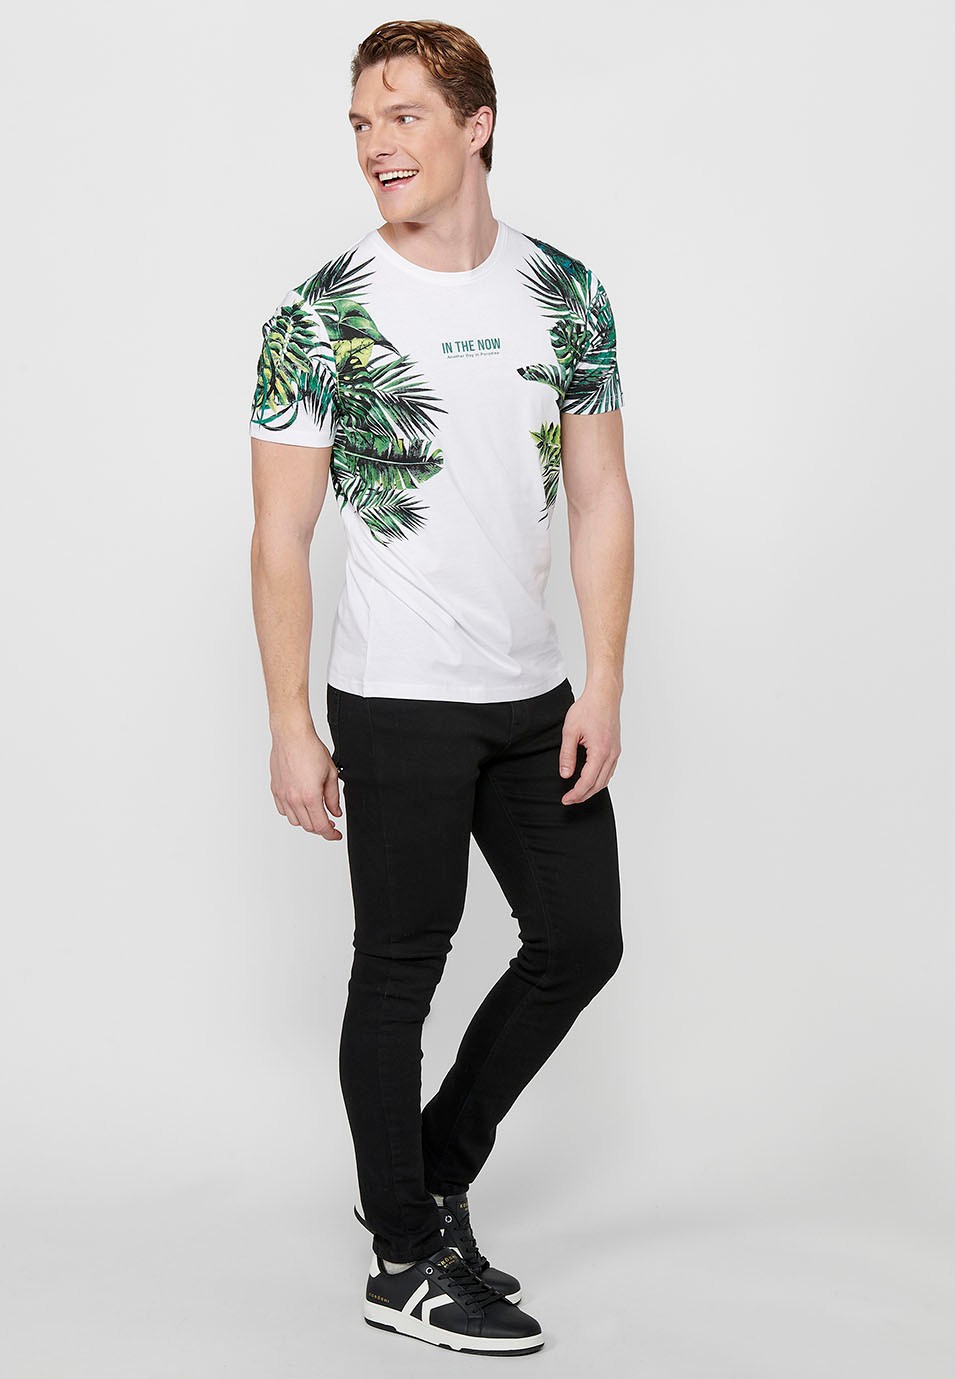 Camiseta de manga corta, estampado tropical y letras delanteras, color blanco para hombres